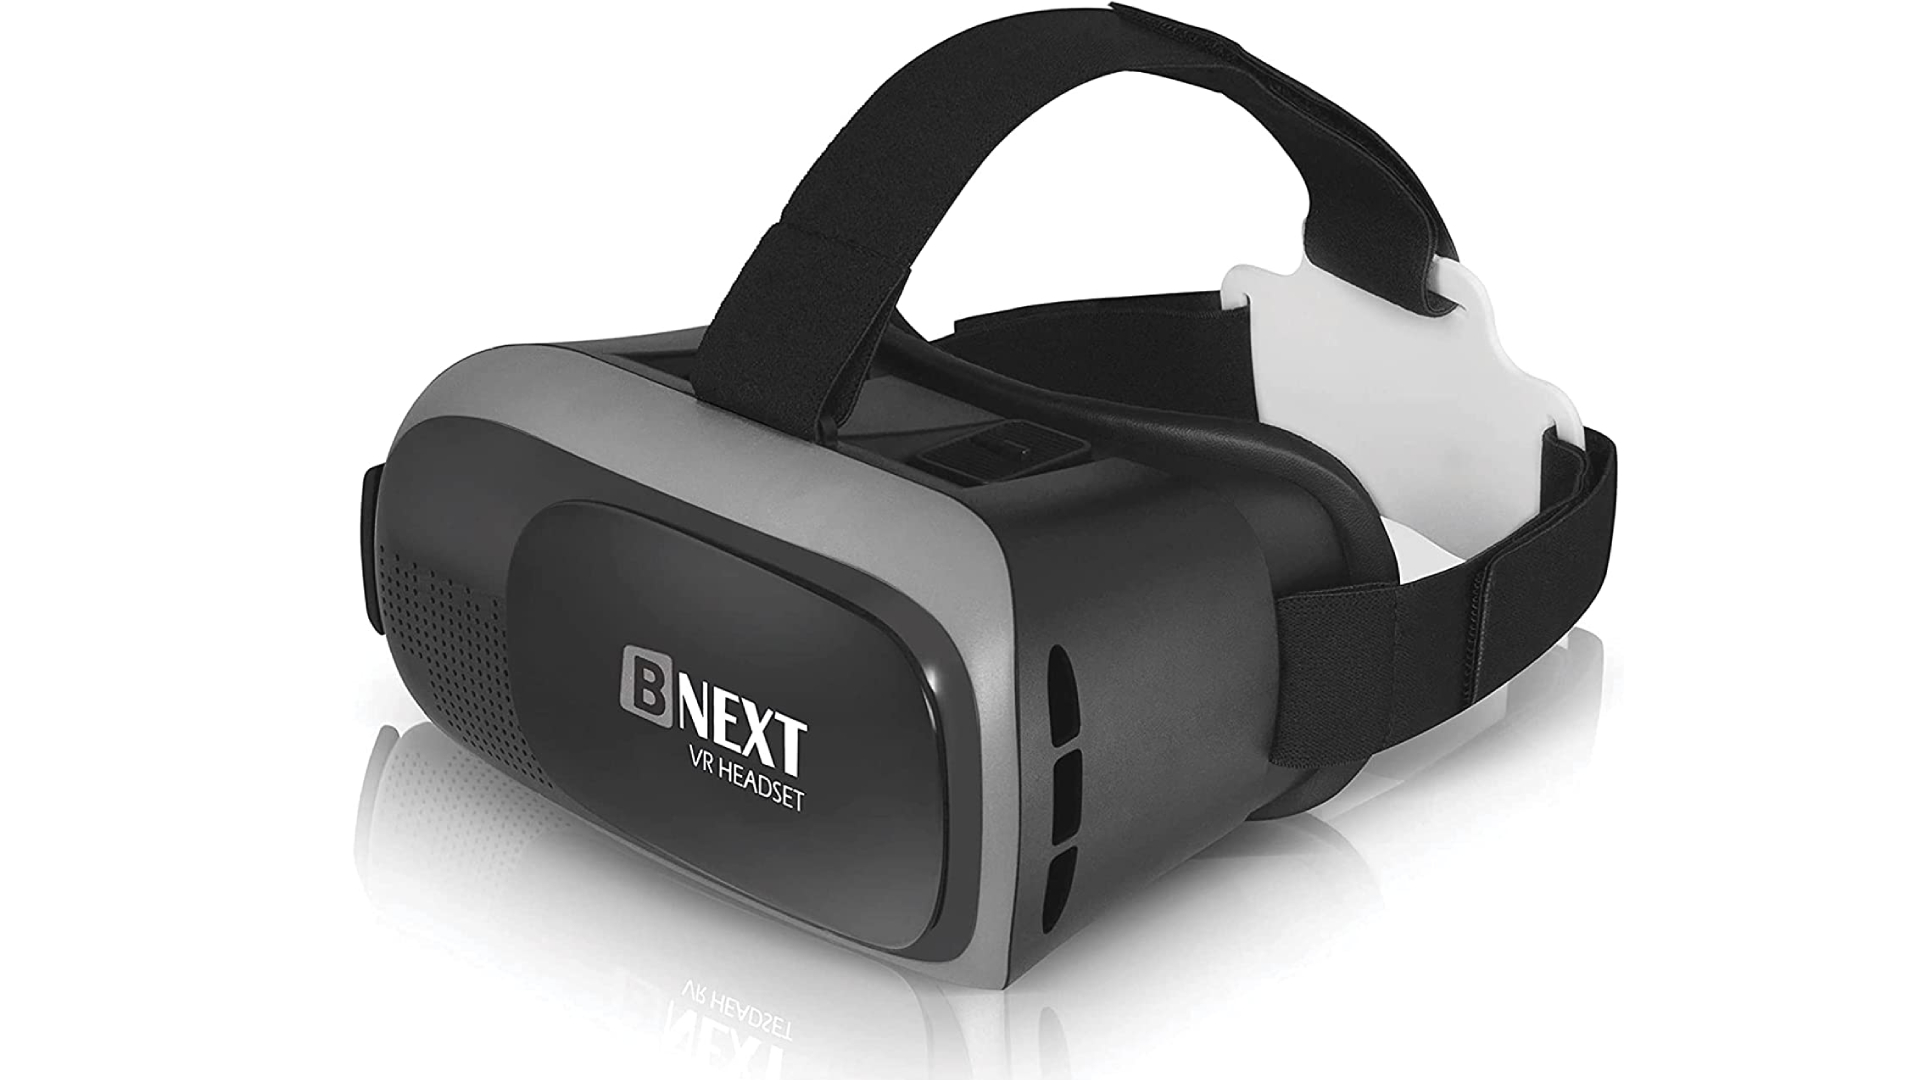 Los mejores auriculares VR: auriculares de realidad virtual Bnext sobre fondo blanco